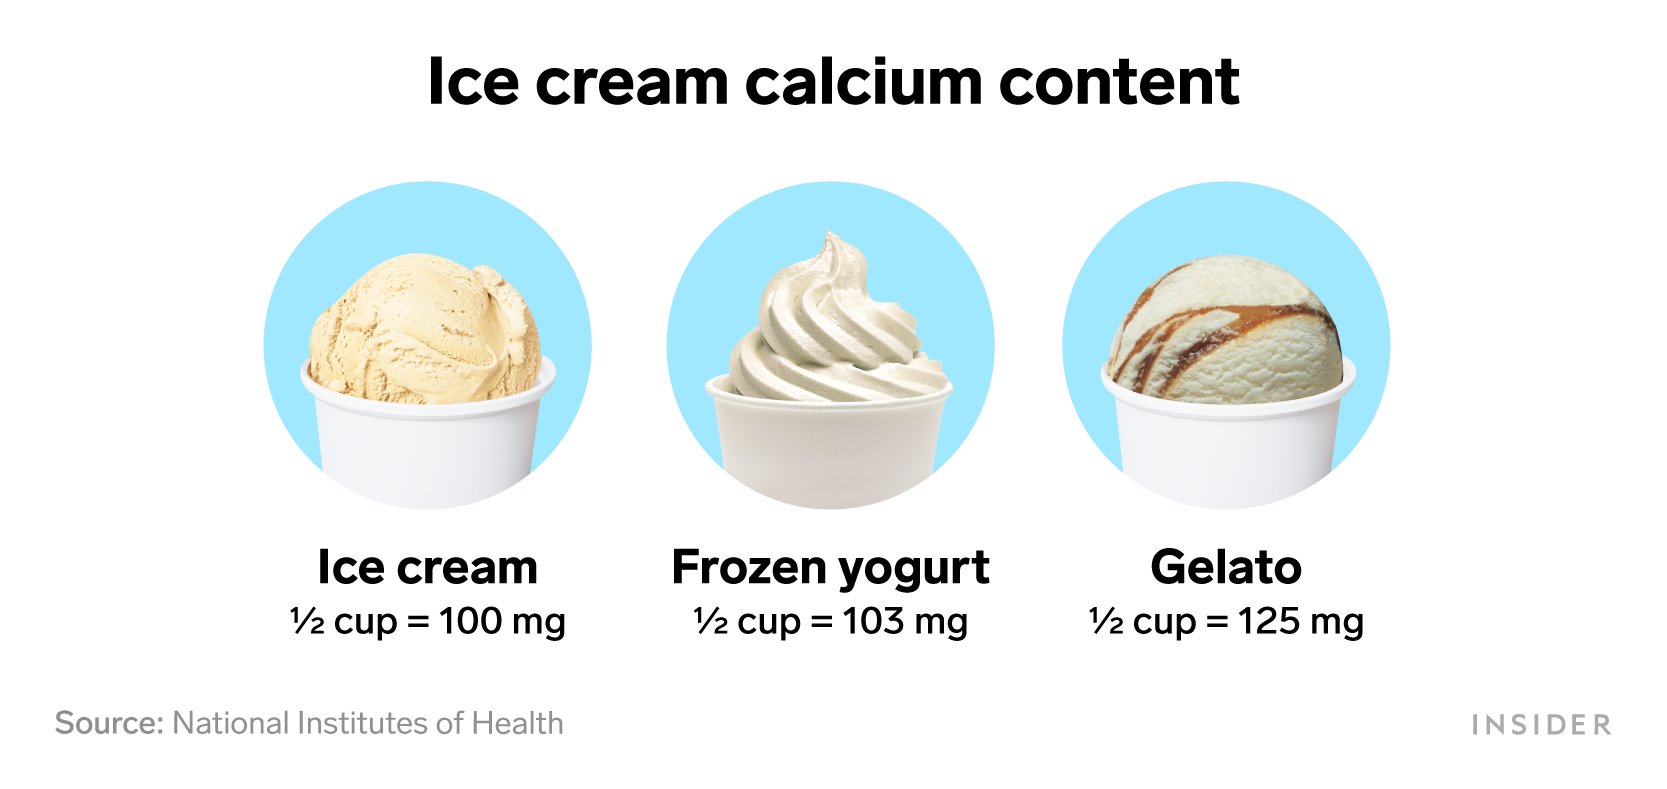 Foods that are rich in calcium: Ice cream calcium content